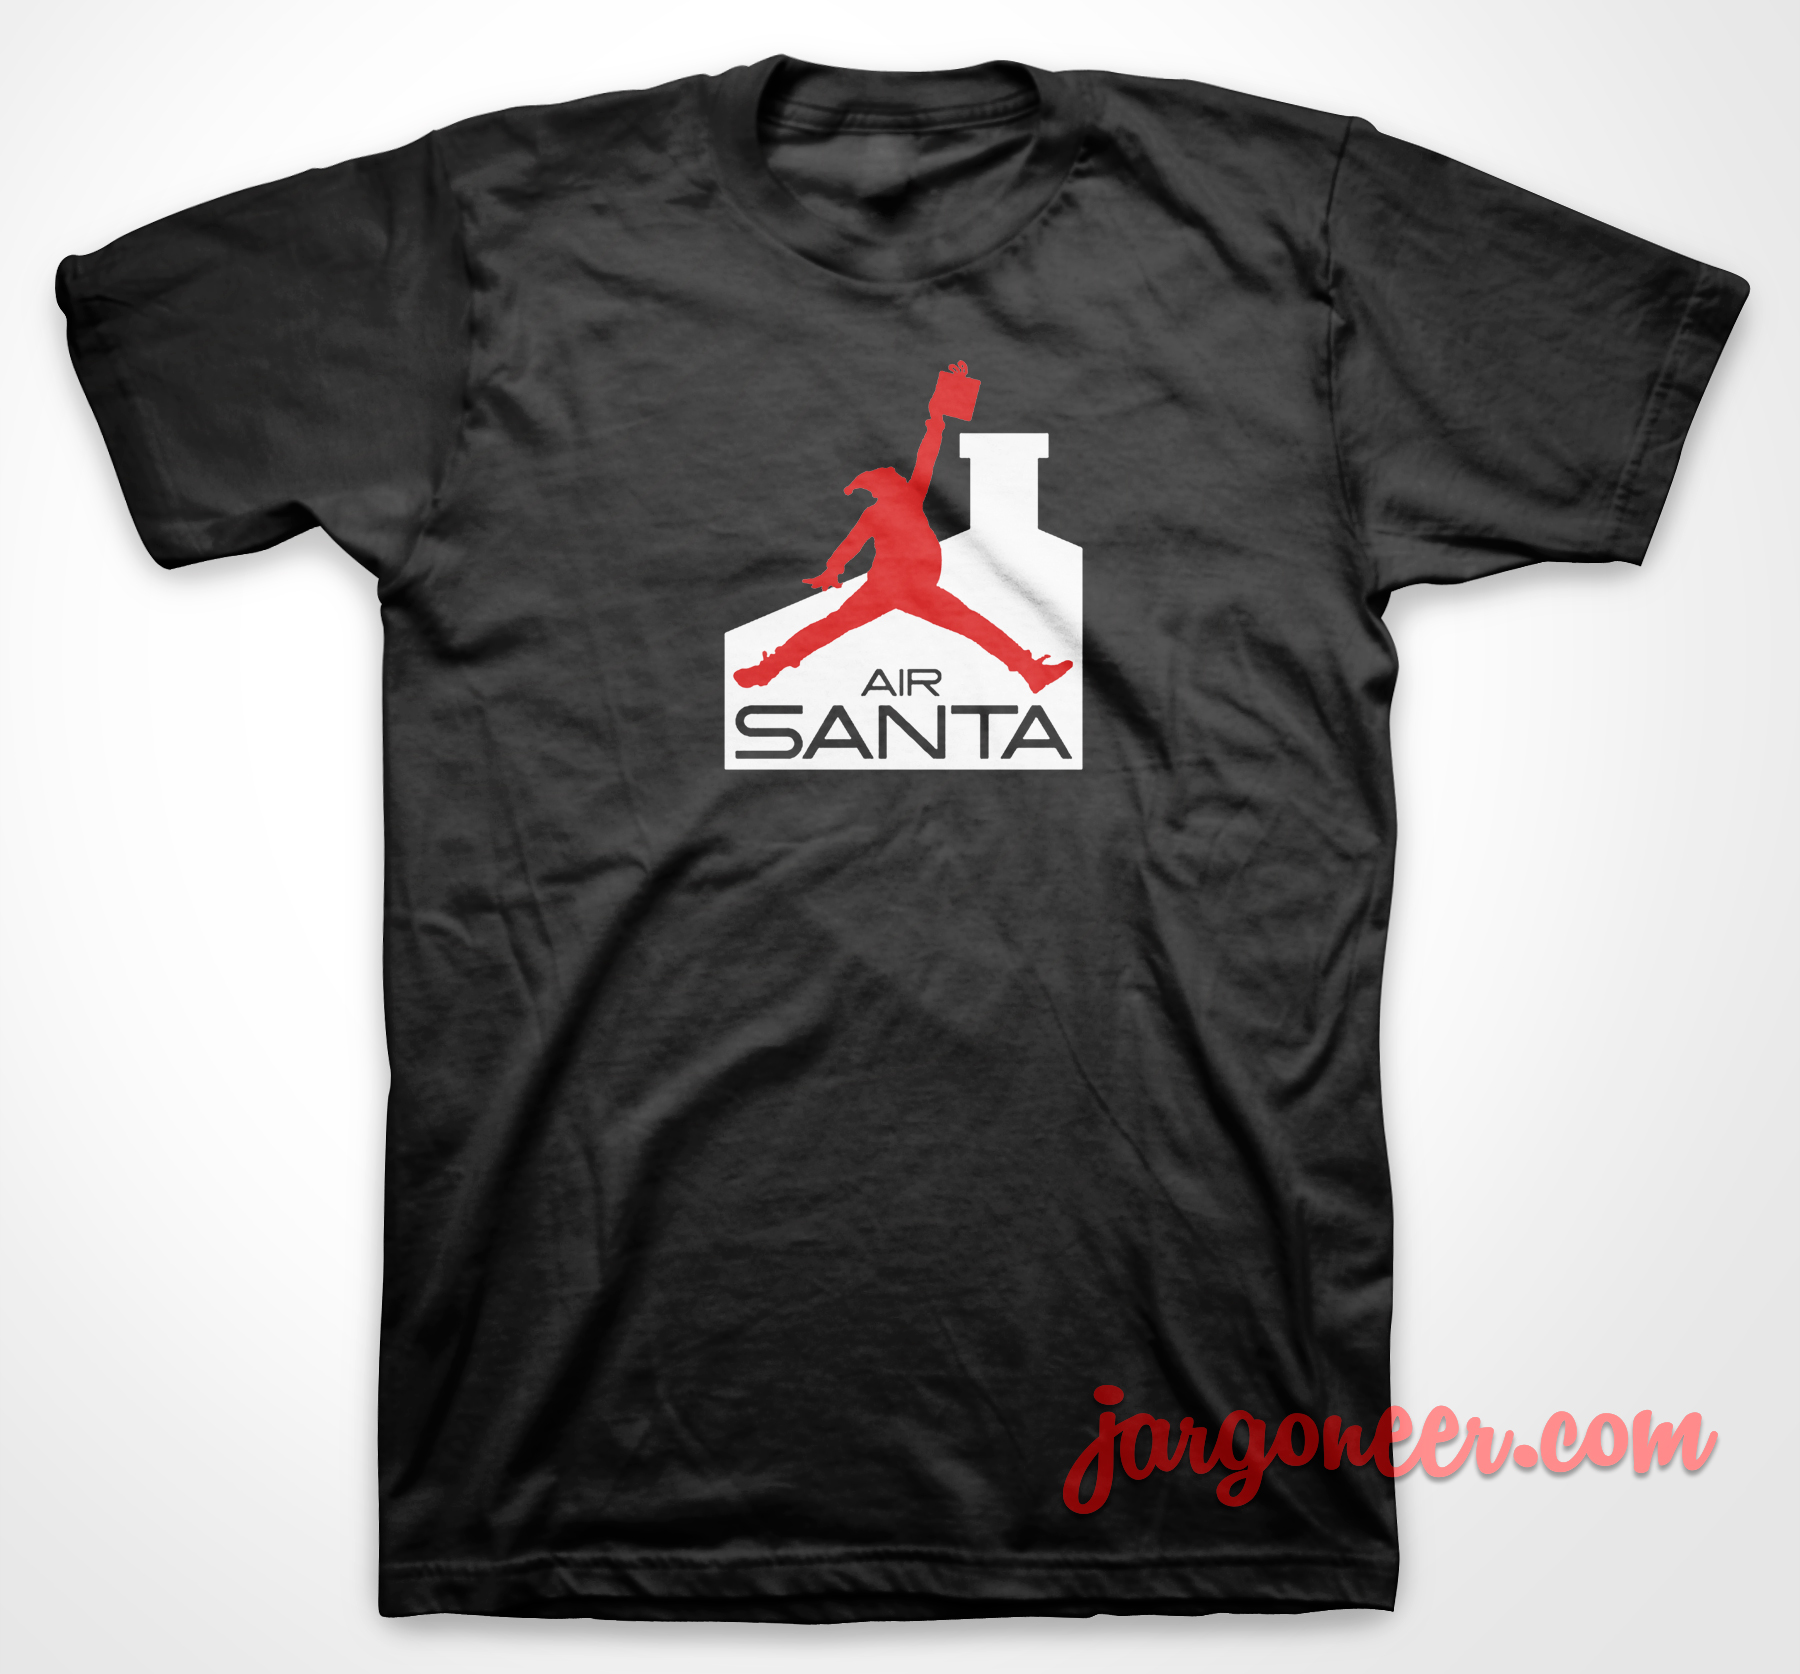 Air Santa - Shop Unique Graphic Cool Shirt Designs